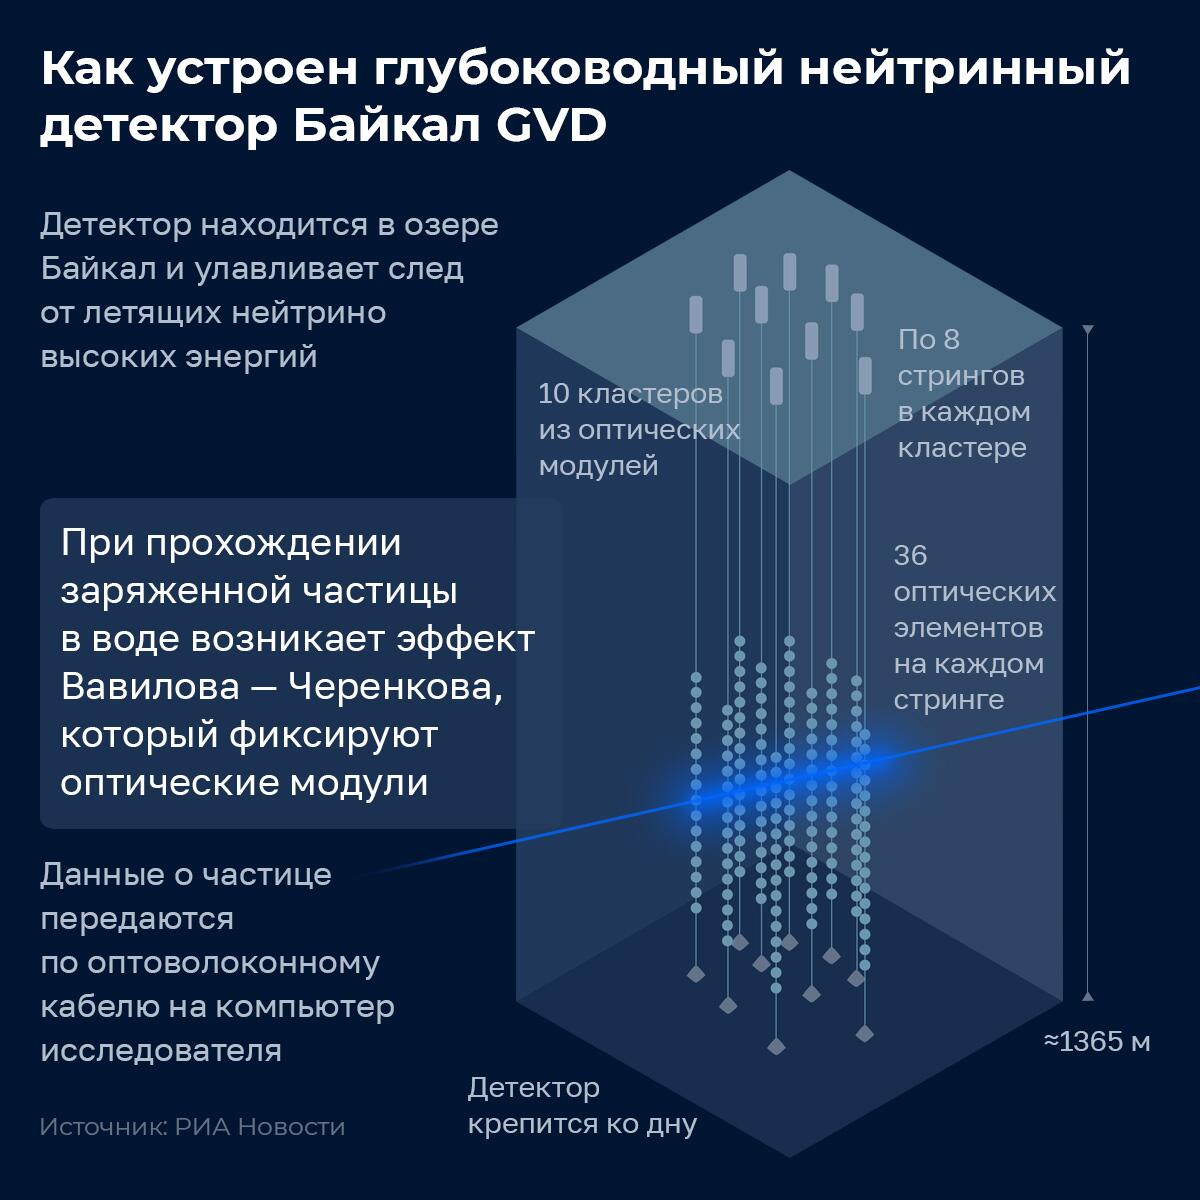 Устройство Байкальского нейтринного детектора